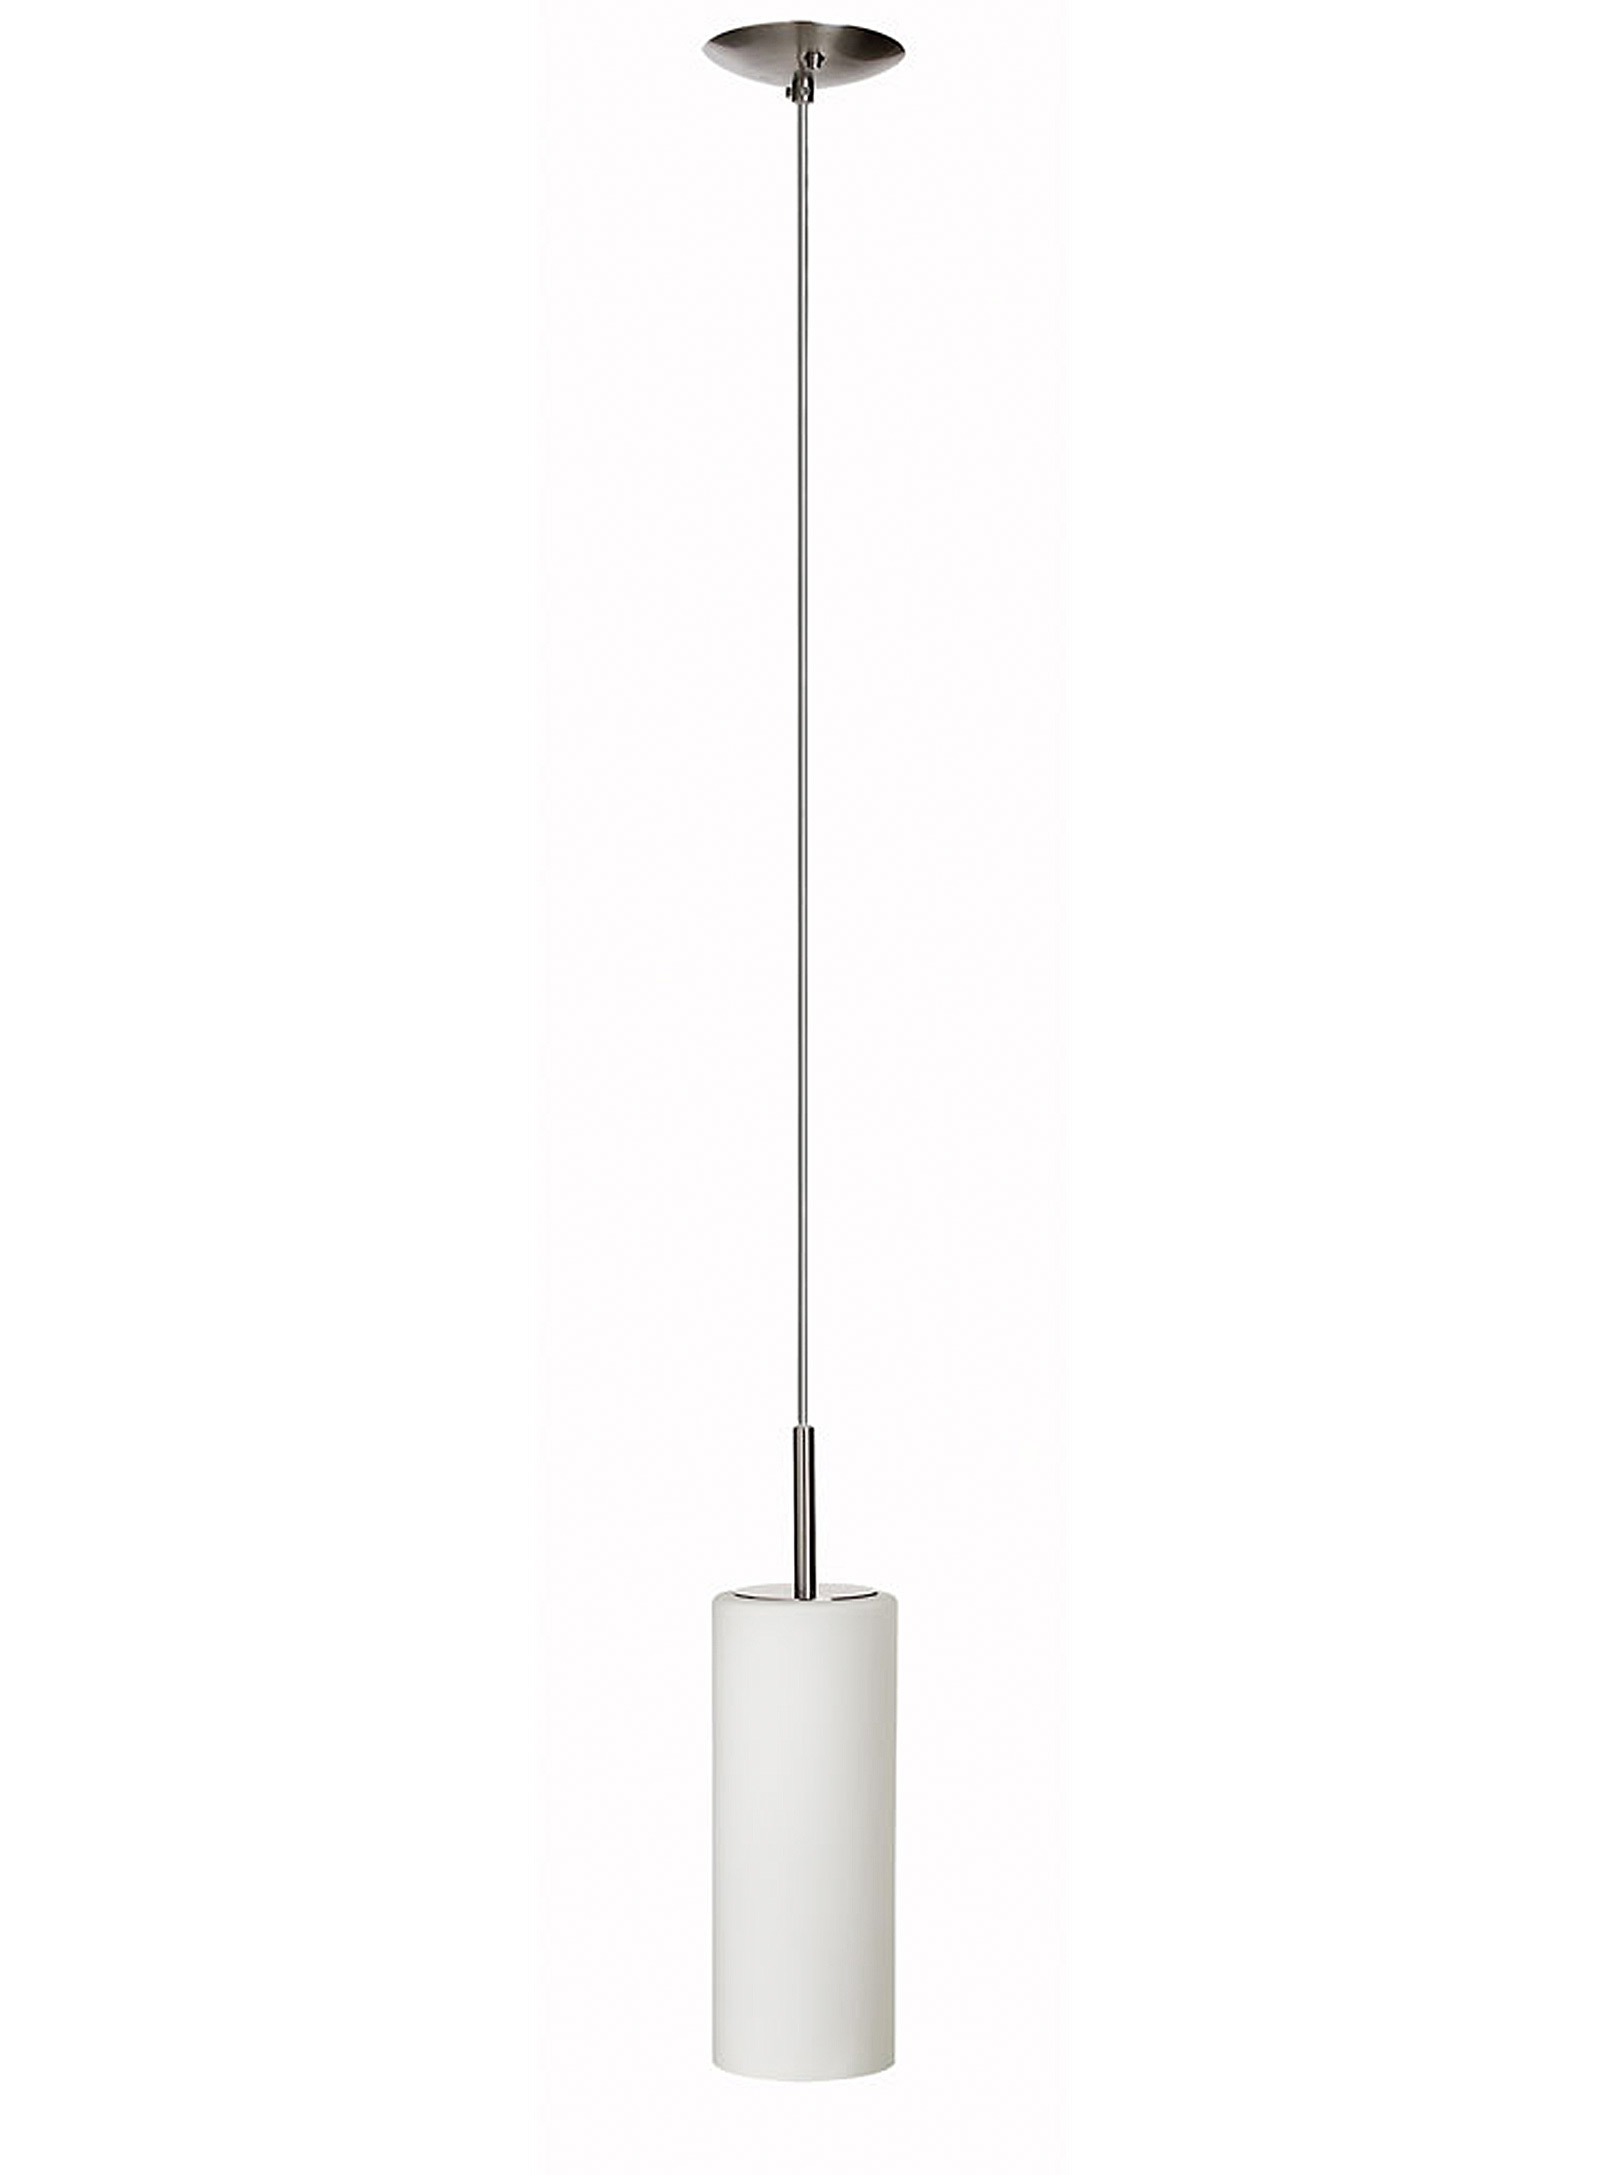 Simons Maison Chromed Opal Hanging Lamp In Silver